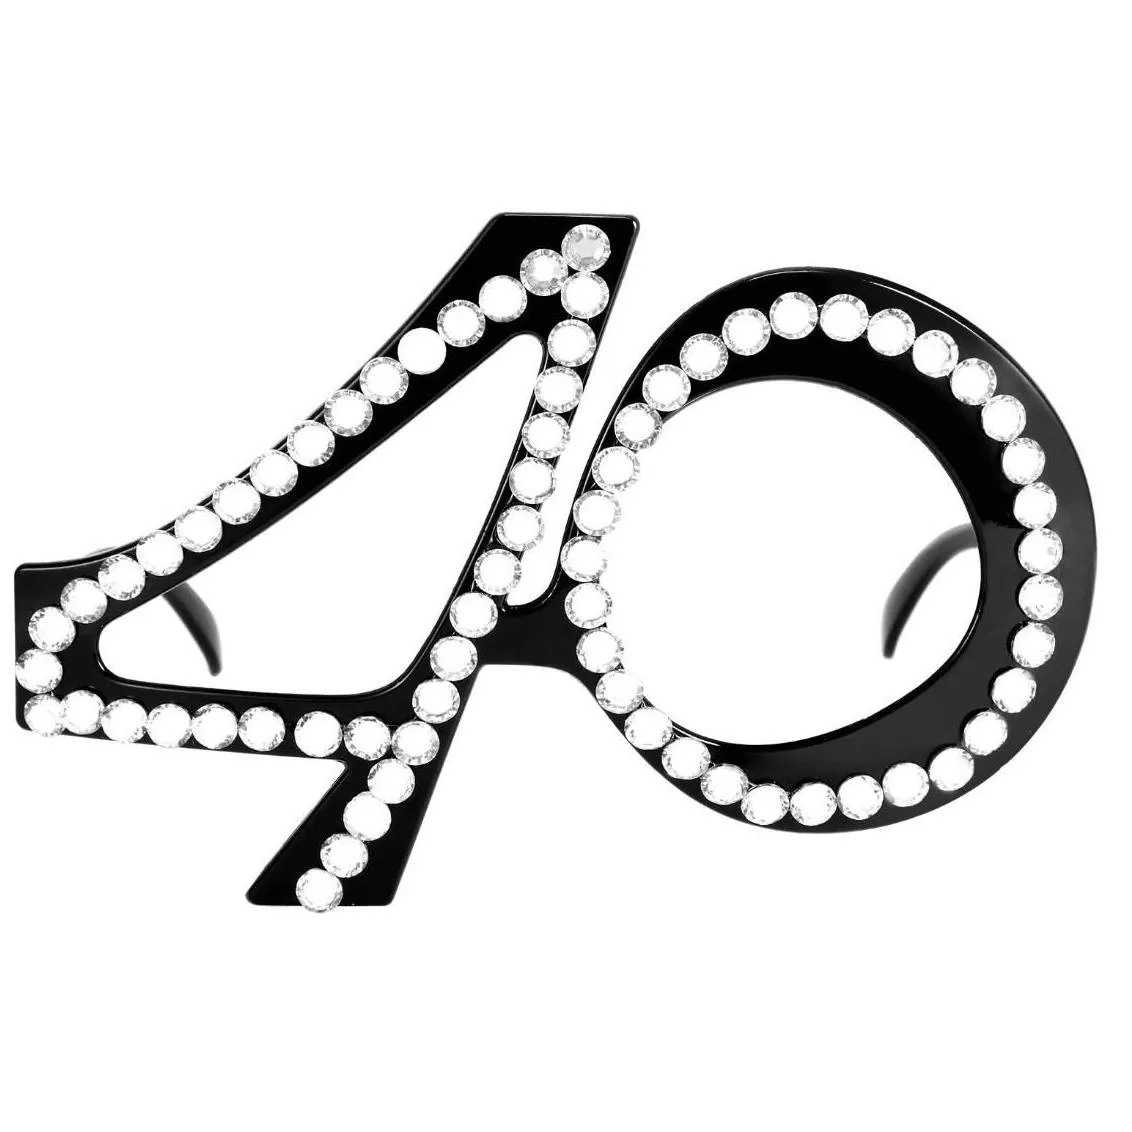 crystal birthday glasses - elegant eyewear for milestone celebrations - 16th to 70th birthdays novelty favors decor